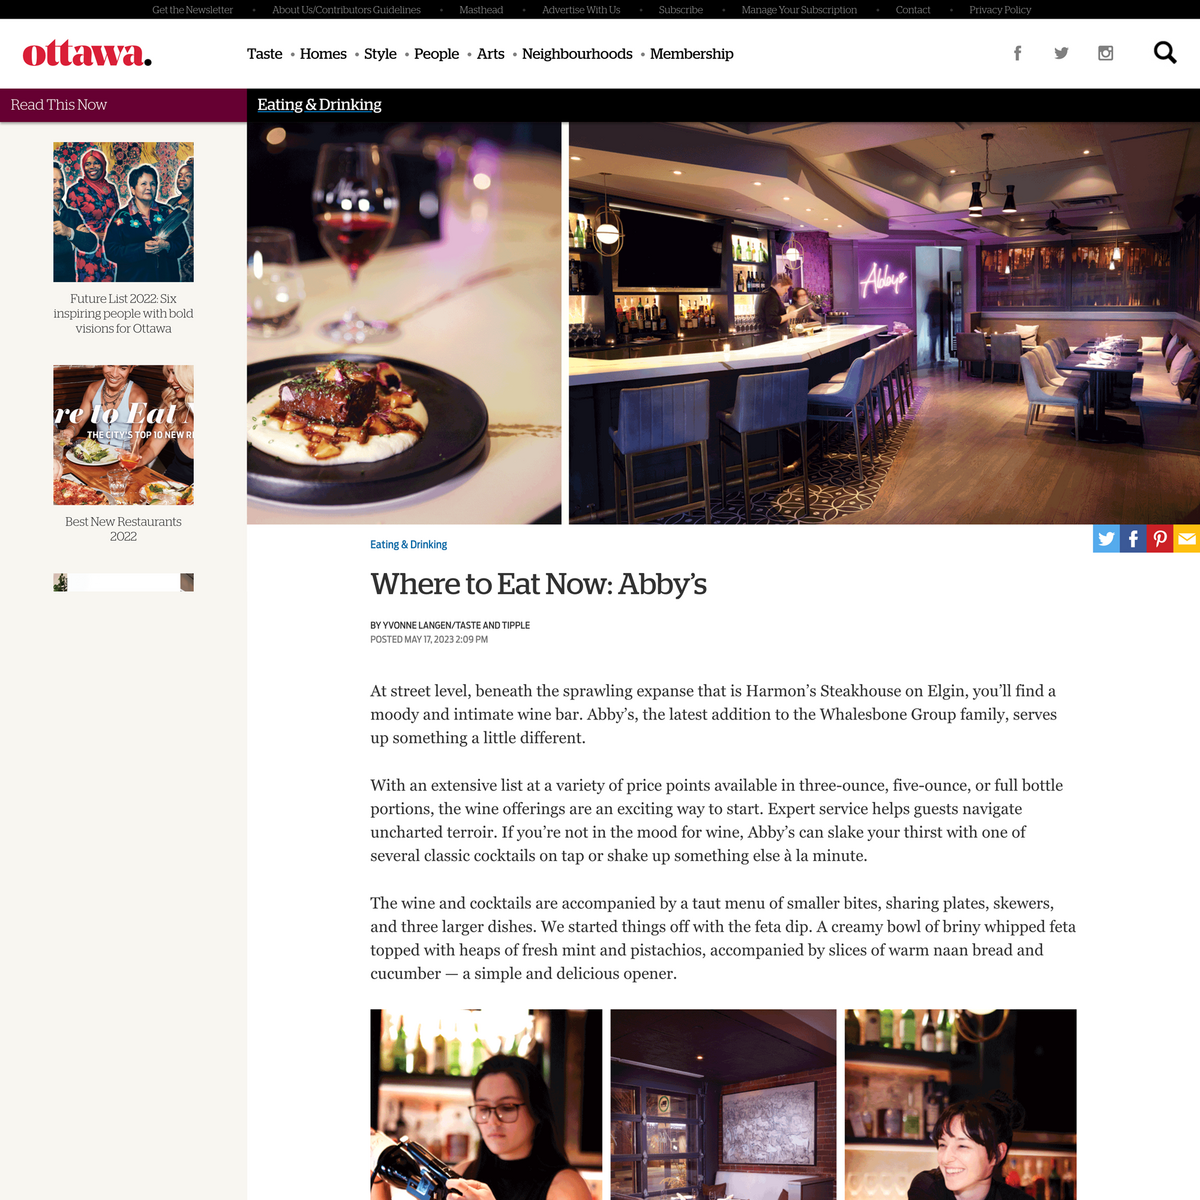 where-to-eat-now-Abby's-Ottawa-magazine